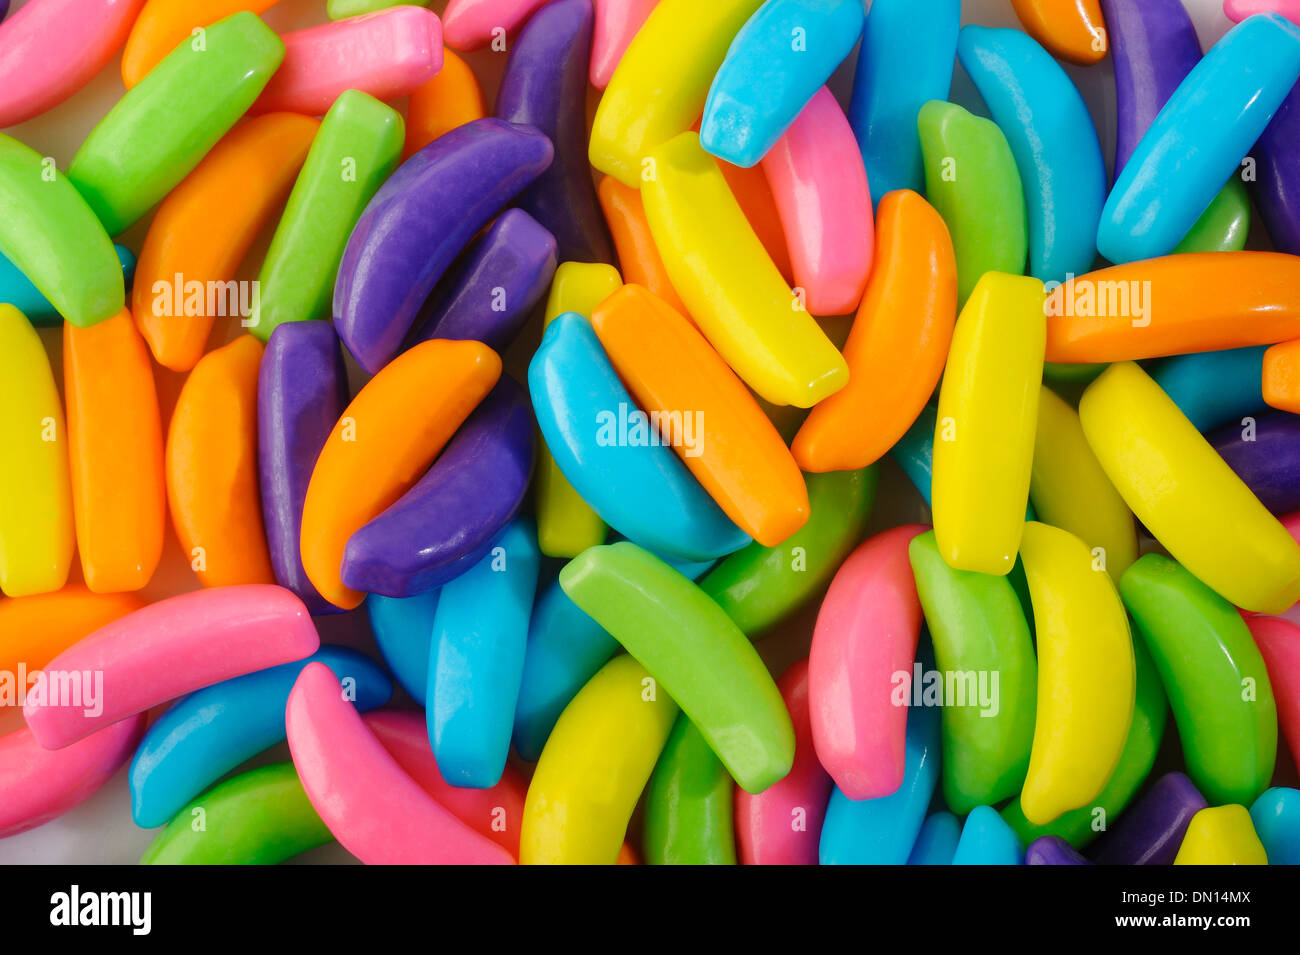 Banana shaped candy Stock Photo